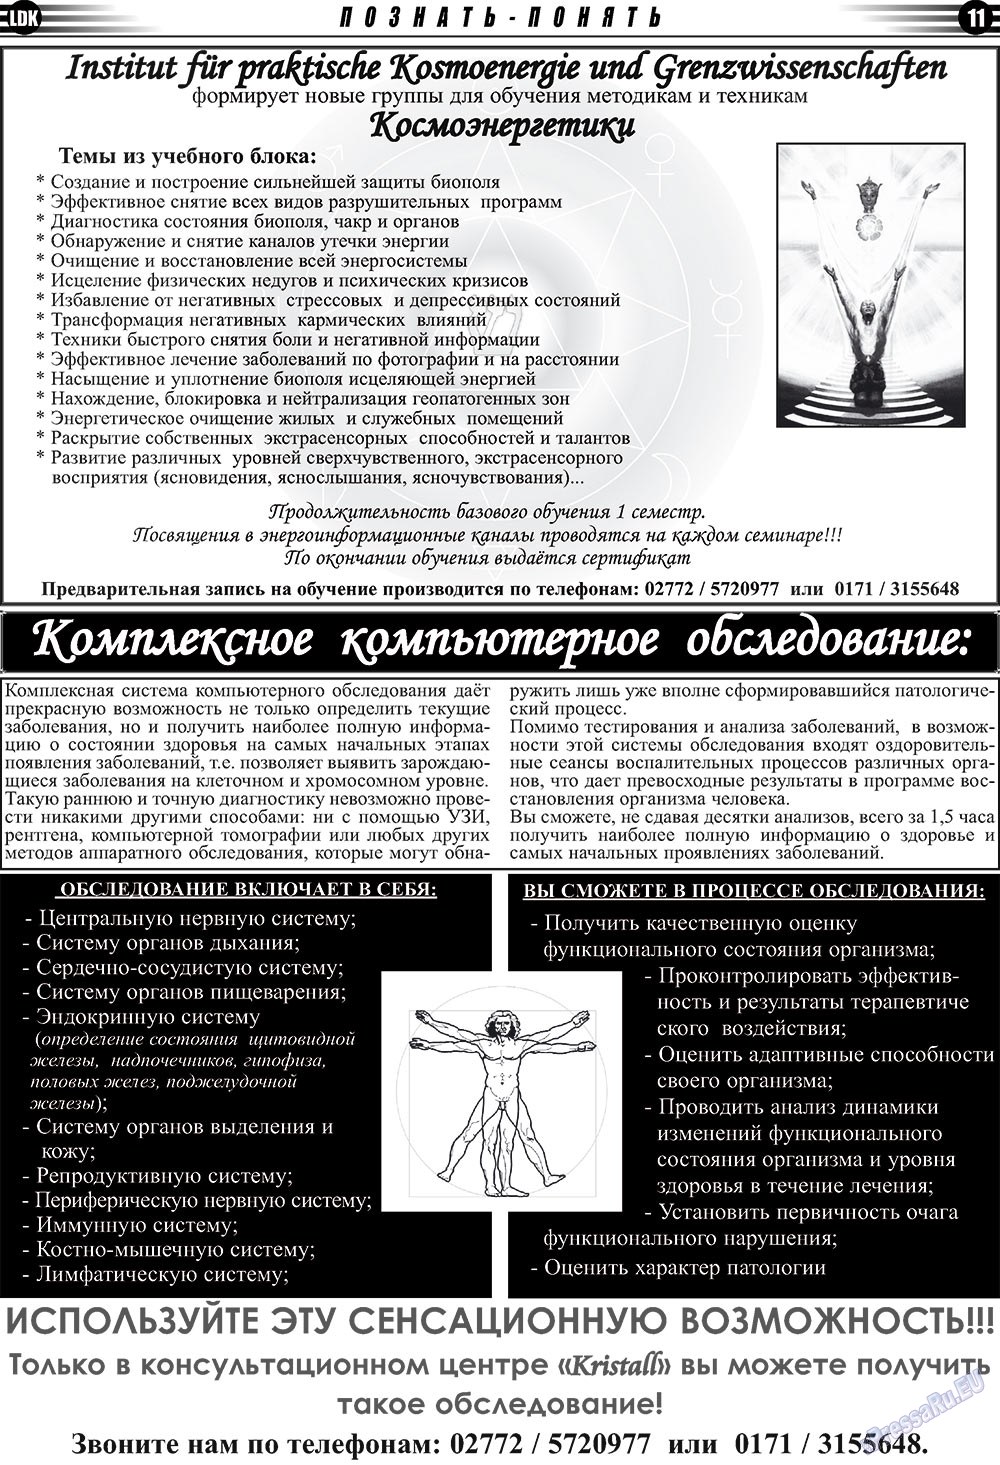 LDK по-русски (газета). 2009 год, номер 3, стр. 11